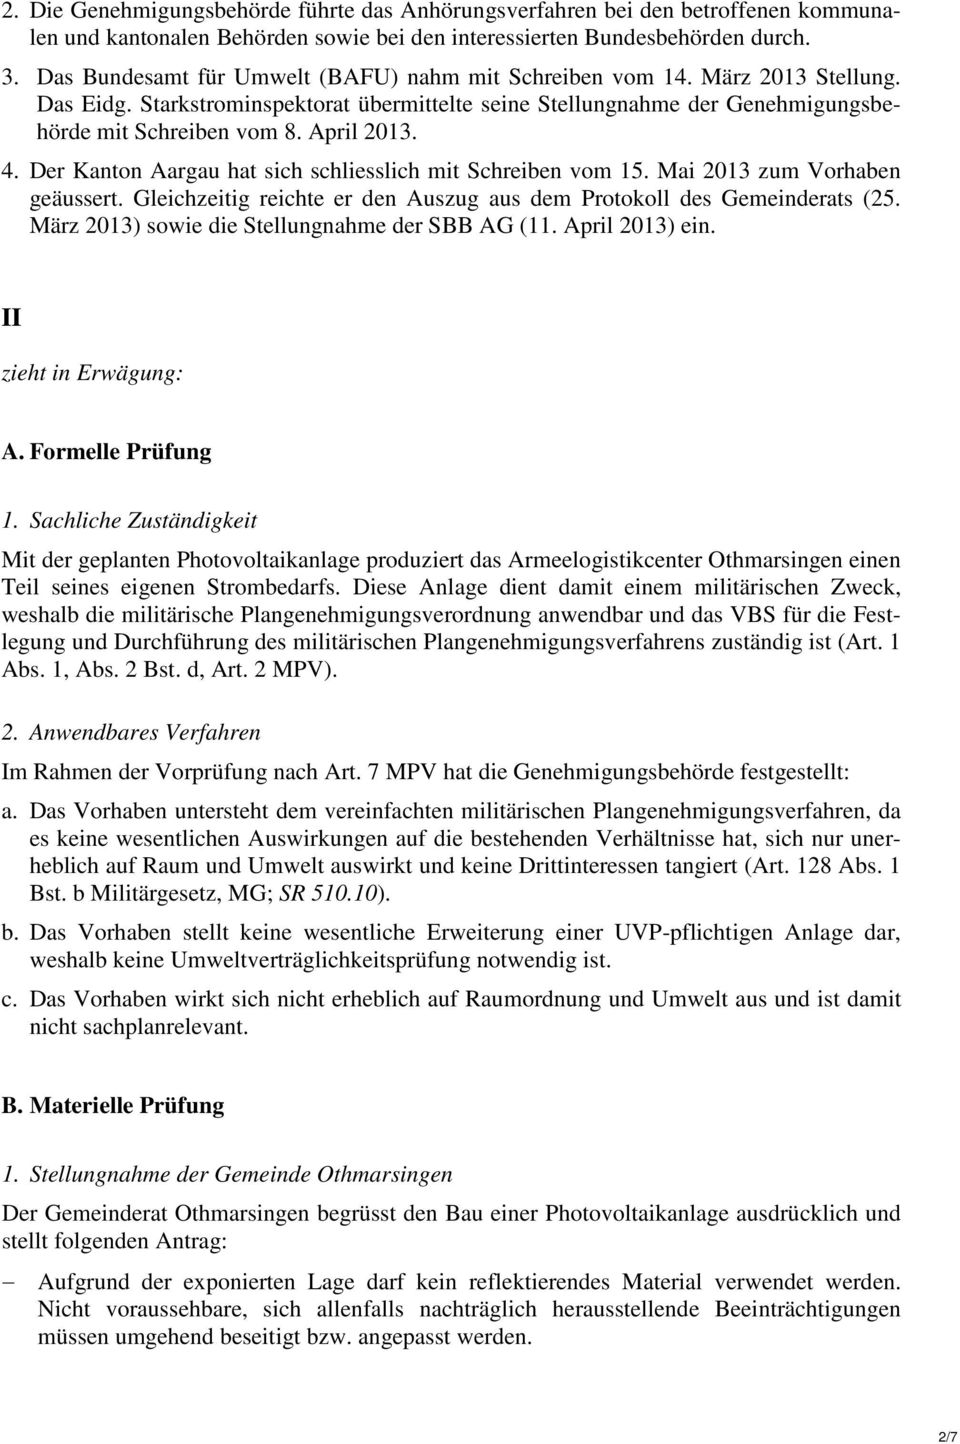 4. Der Kanton Aargau hat sich schliesslich mit Schreiben vom 15. Mai 2013 zum Vorhaben geäussert. Gleichzeitig reichte er den Auszug aus dem Protokoll des Gemeinderats (25.